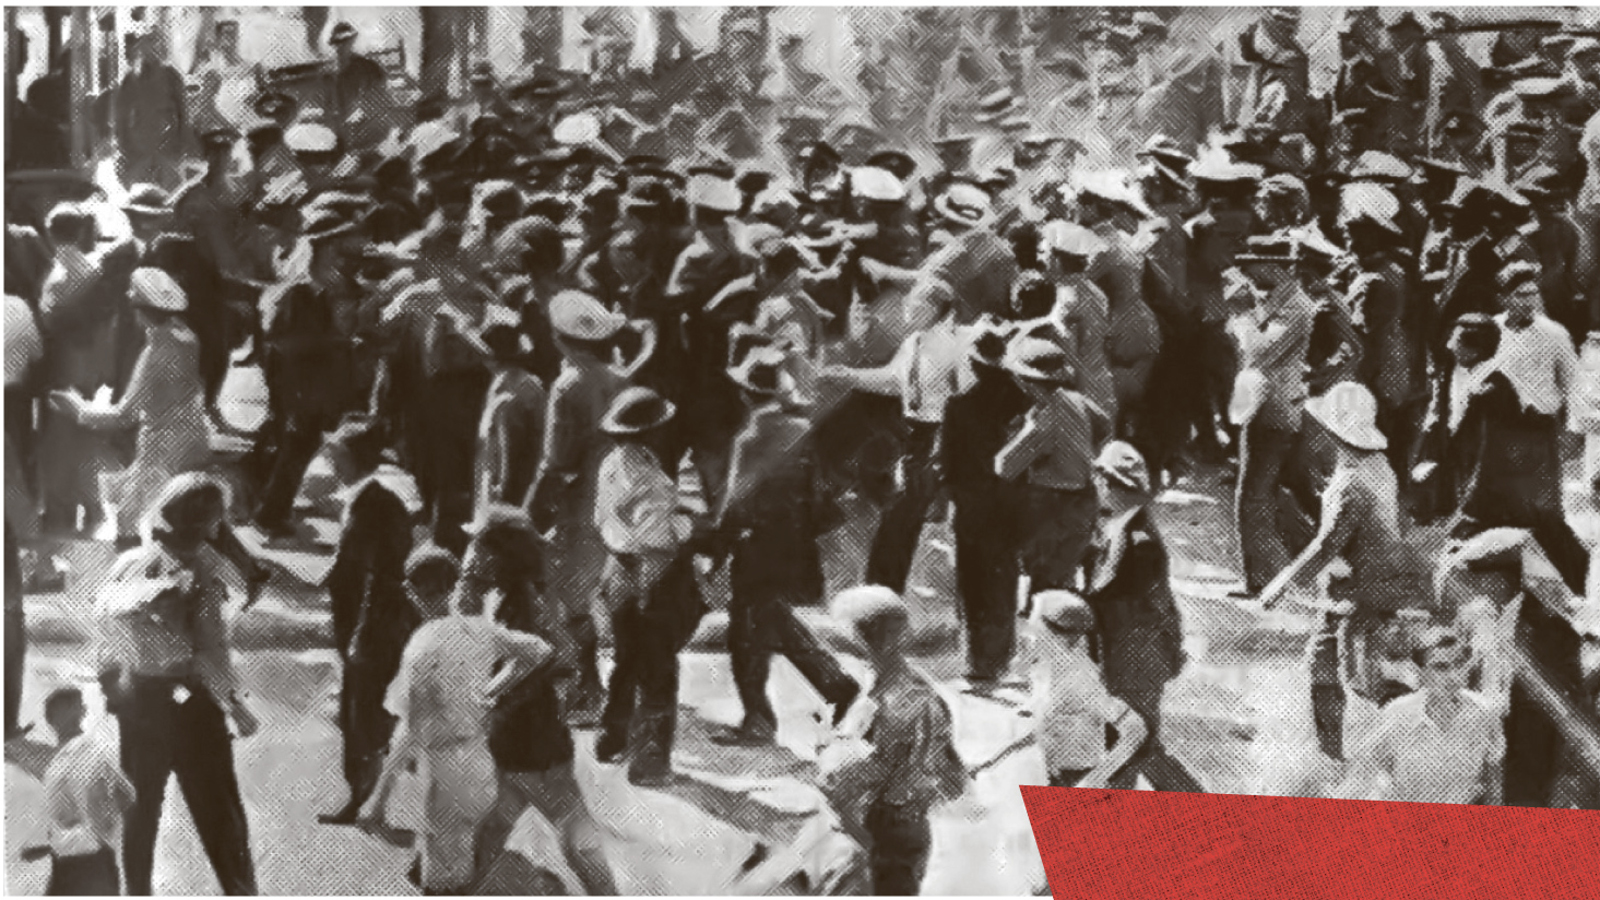 Τα ταξικά εργατικά σωματεία διαλύουν τη φασιστική επίδειξη της 26ης Ιούνη 1933, στο Σταθμό Λαρίσης.